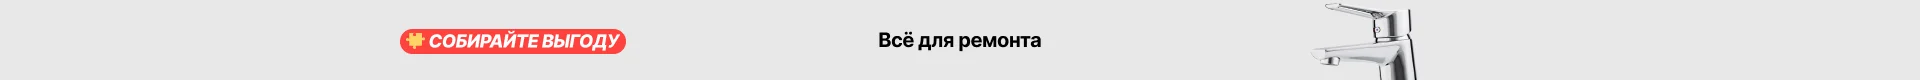 Олень Охота бурый камуфляж логотип закаленное стекло Чехлы для мобильных